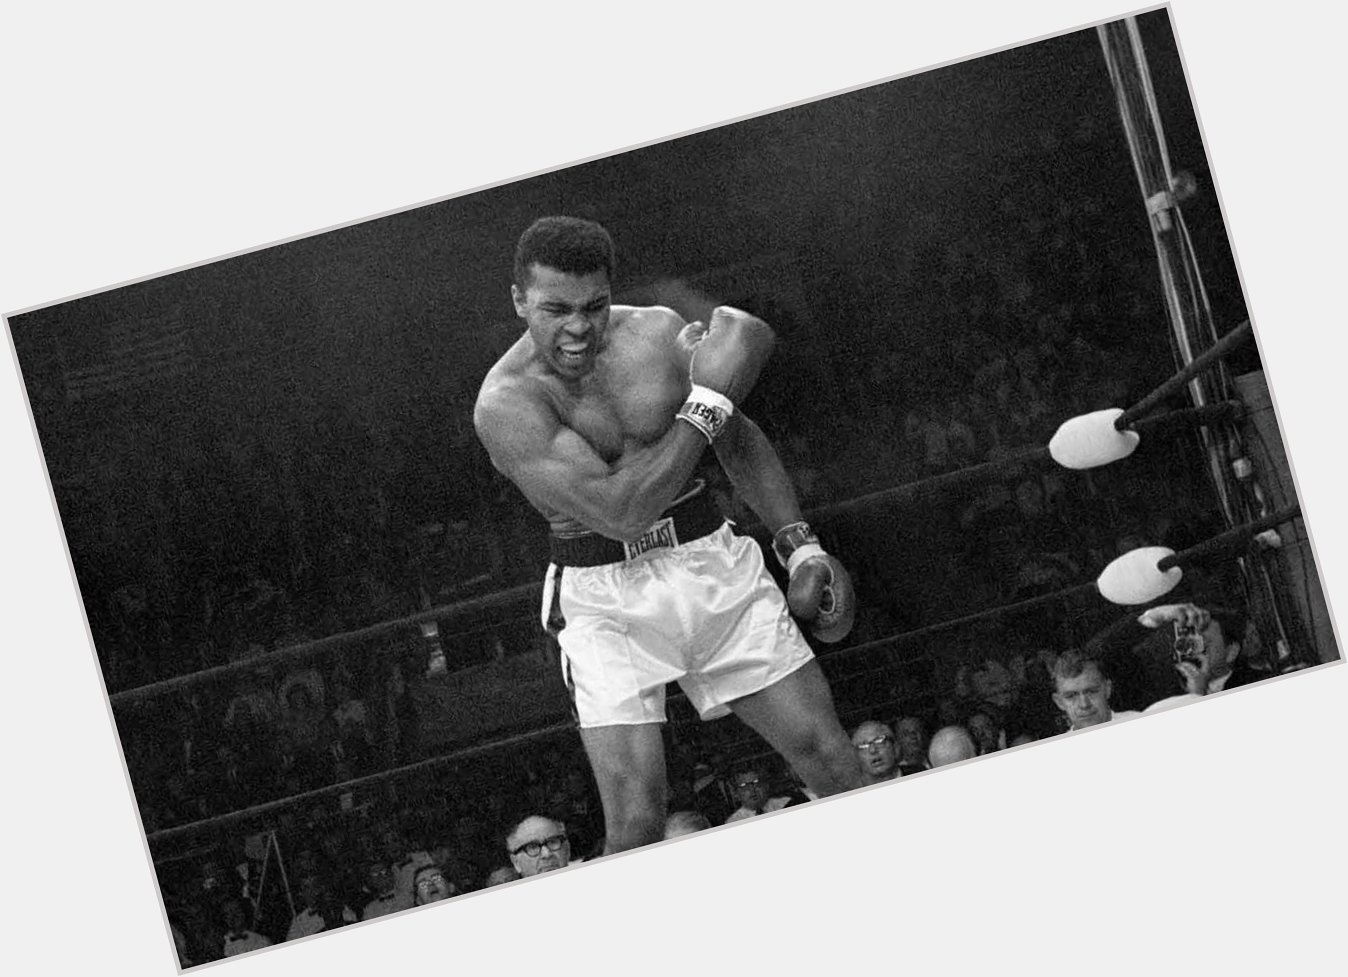 Happy birthday to The Greatest Muhammad Ali January 17, 1942 